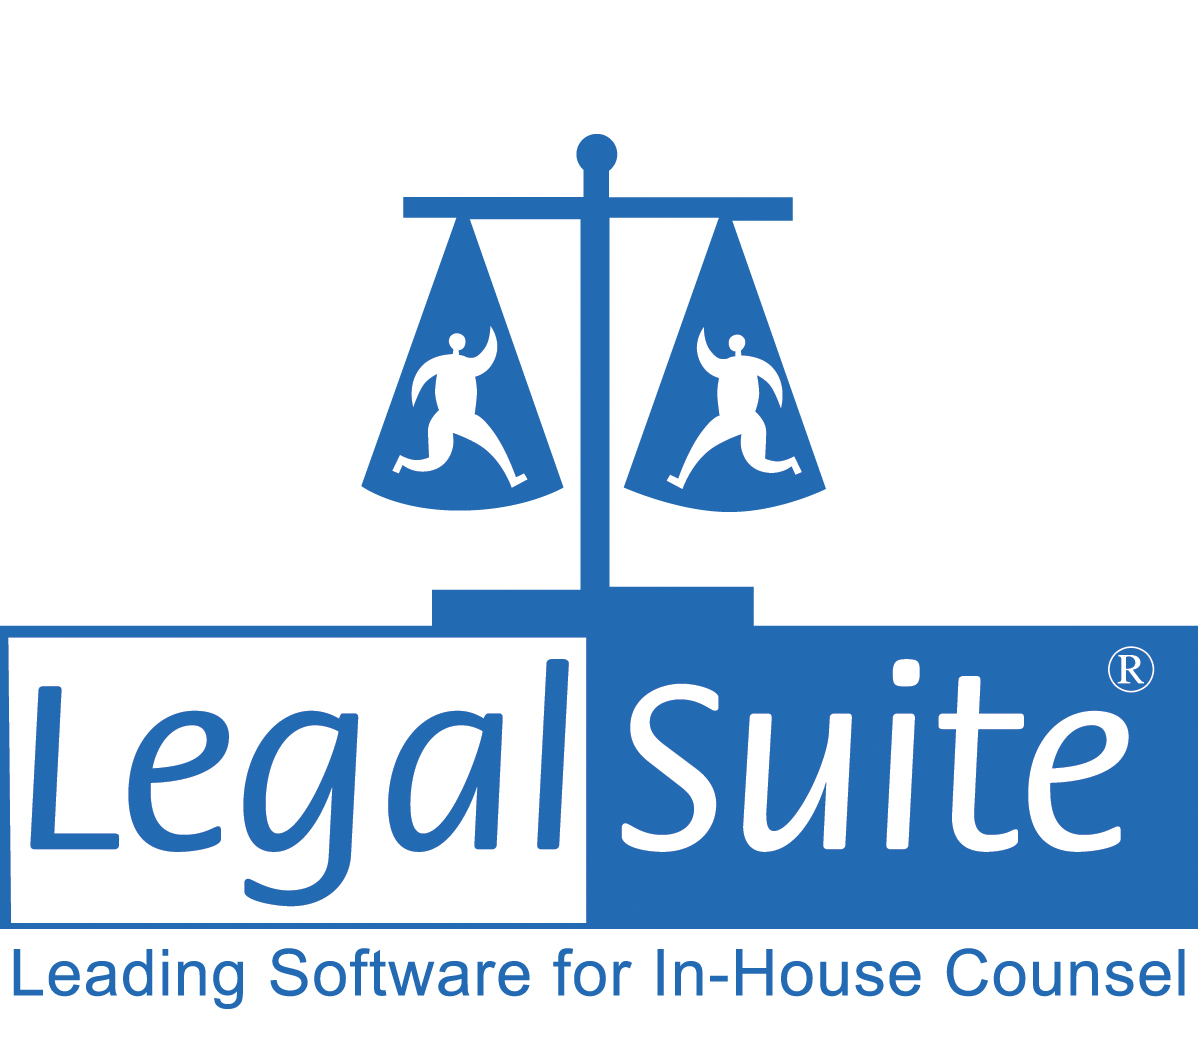 Legal Suite